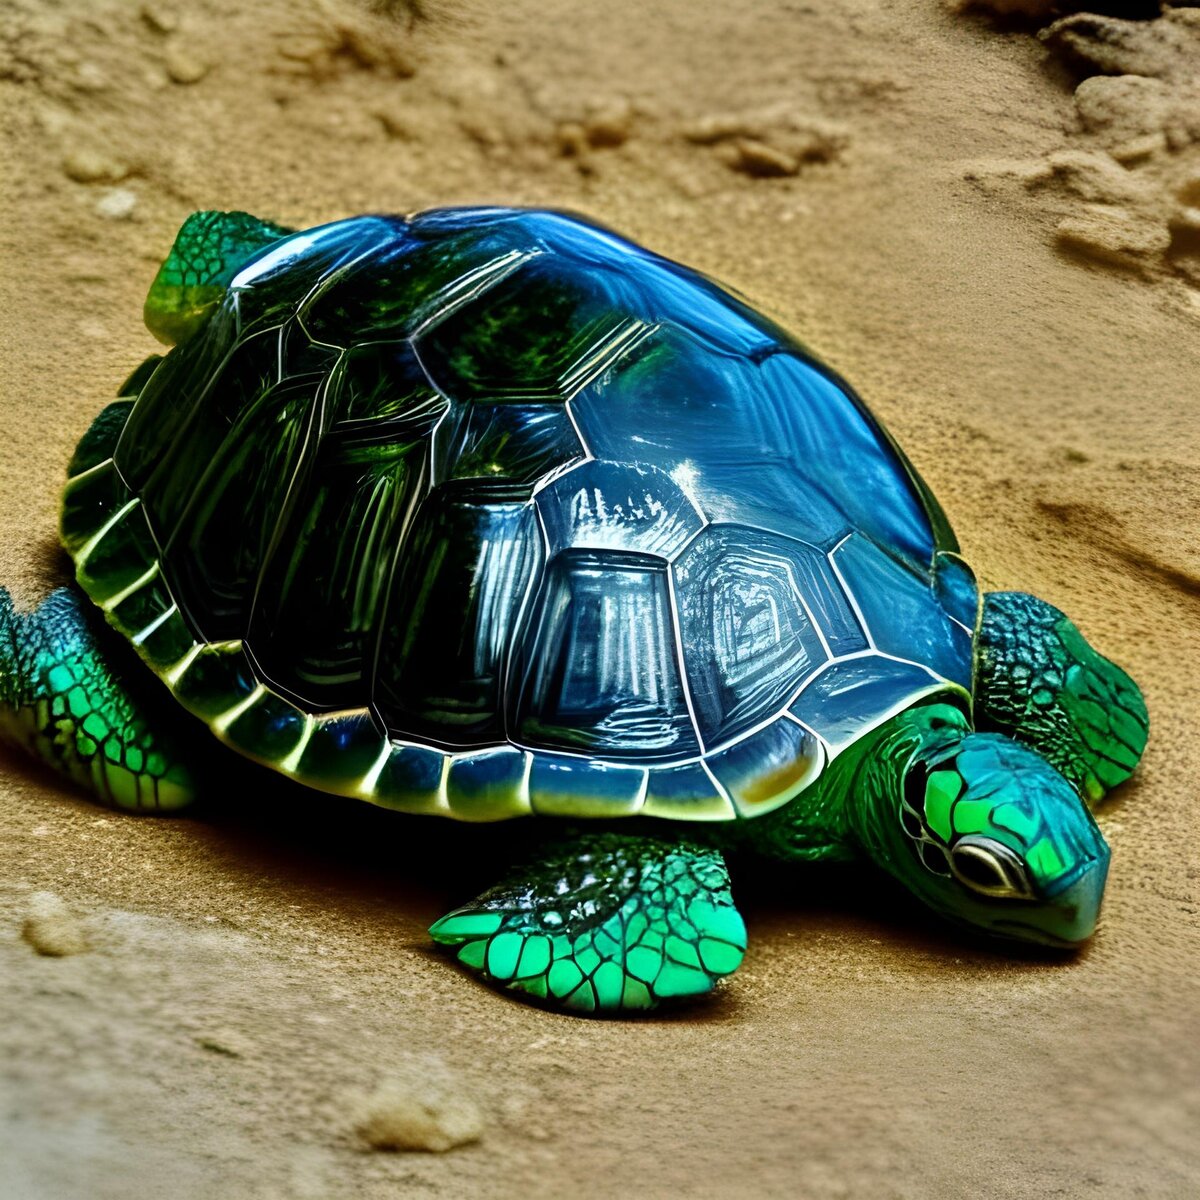 20 интересных фактов о черепахах | VK